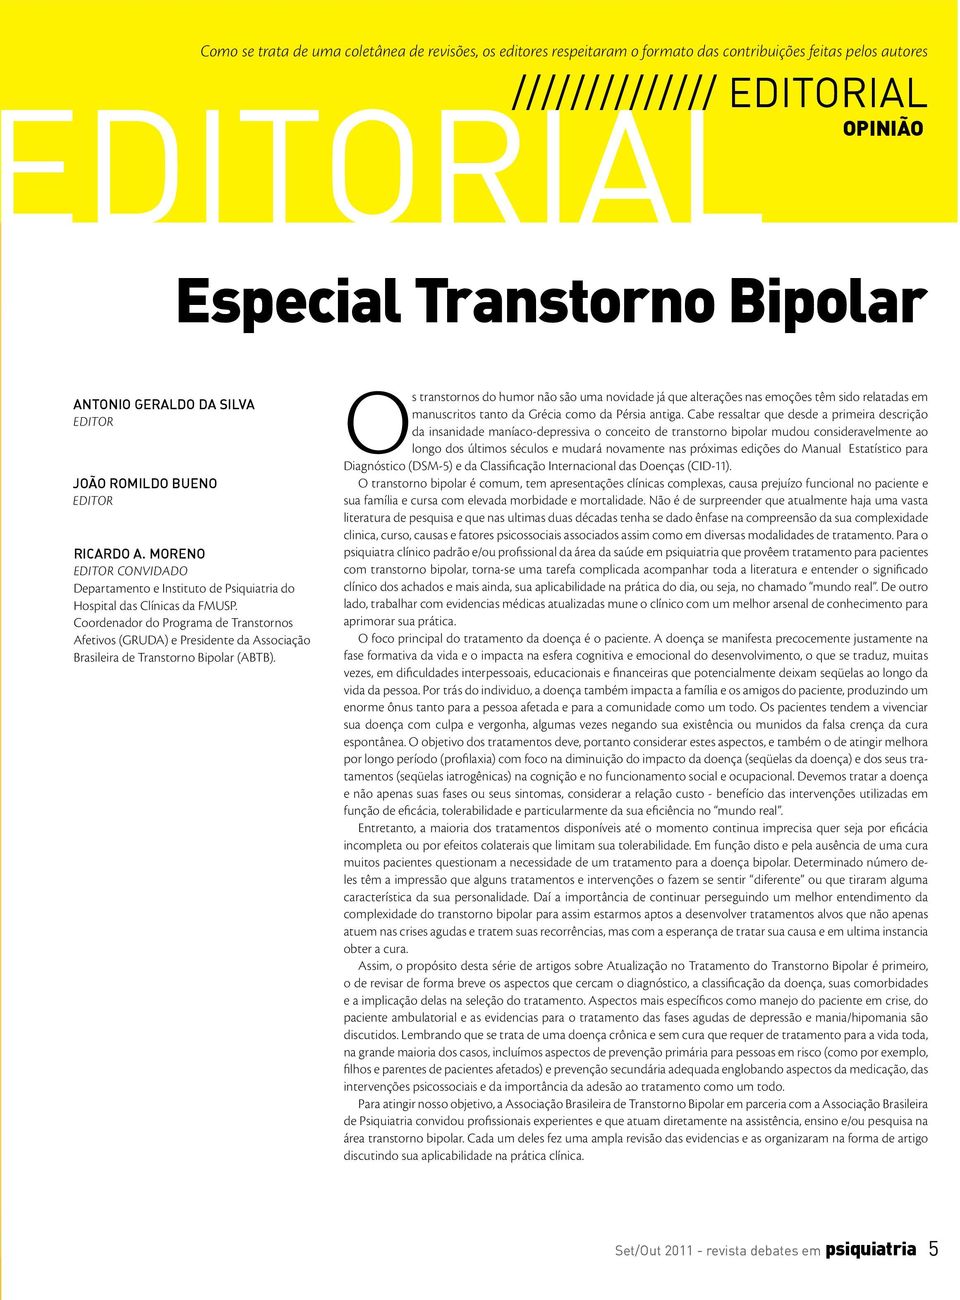 Coordenador do Programa de Transtornos Afetivos (GRUDA) e Presidente da Associação Brasileira de Transtorno Bipolar (ABTB).